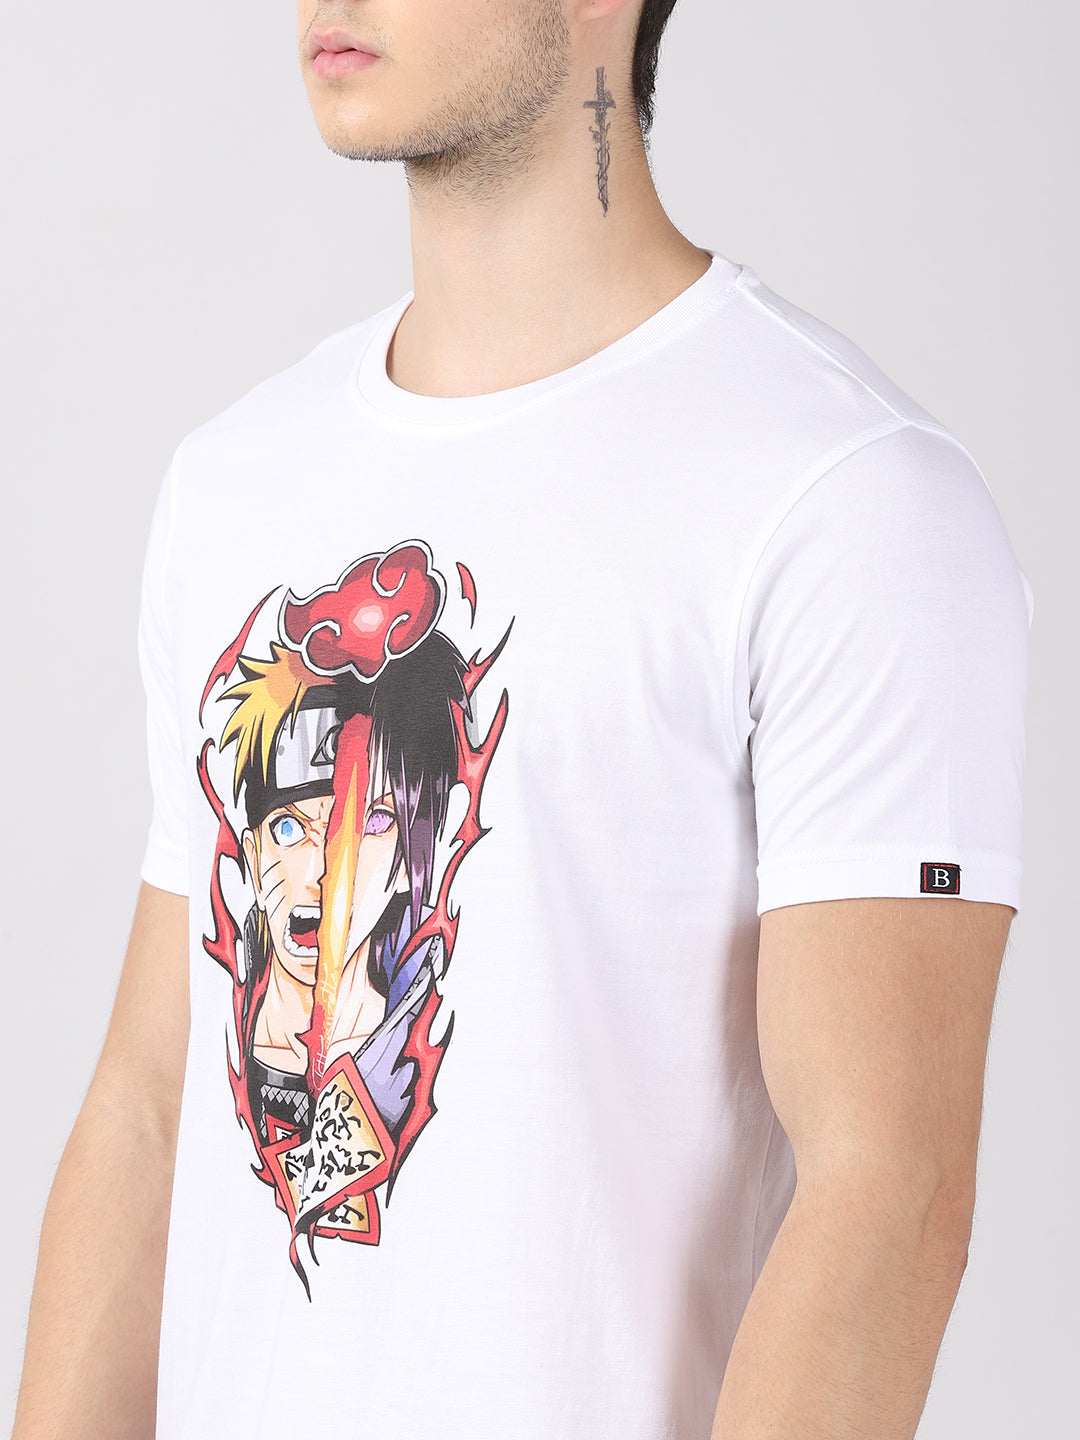 Sasuke Naruto - Naruto Anime T-Shirt Graphic T-Shirts Bushirt   